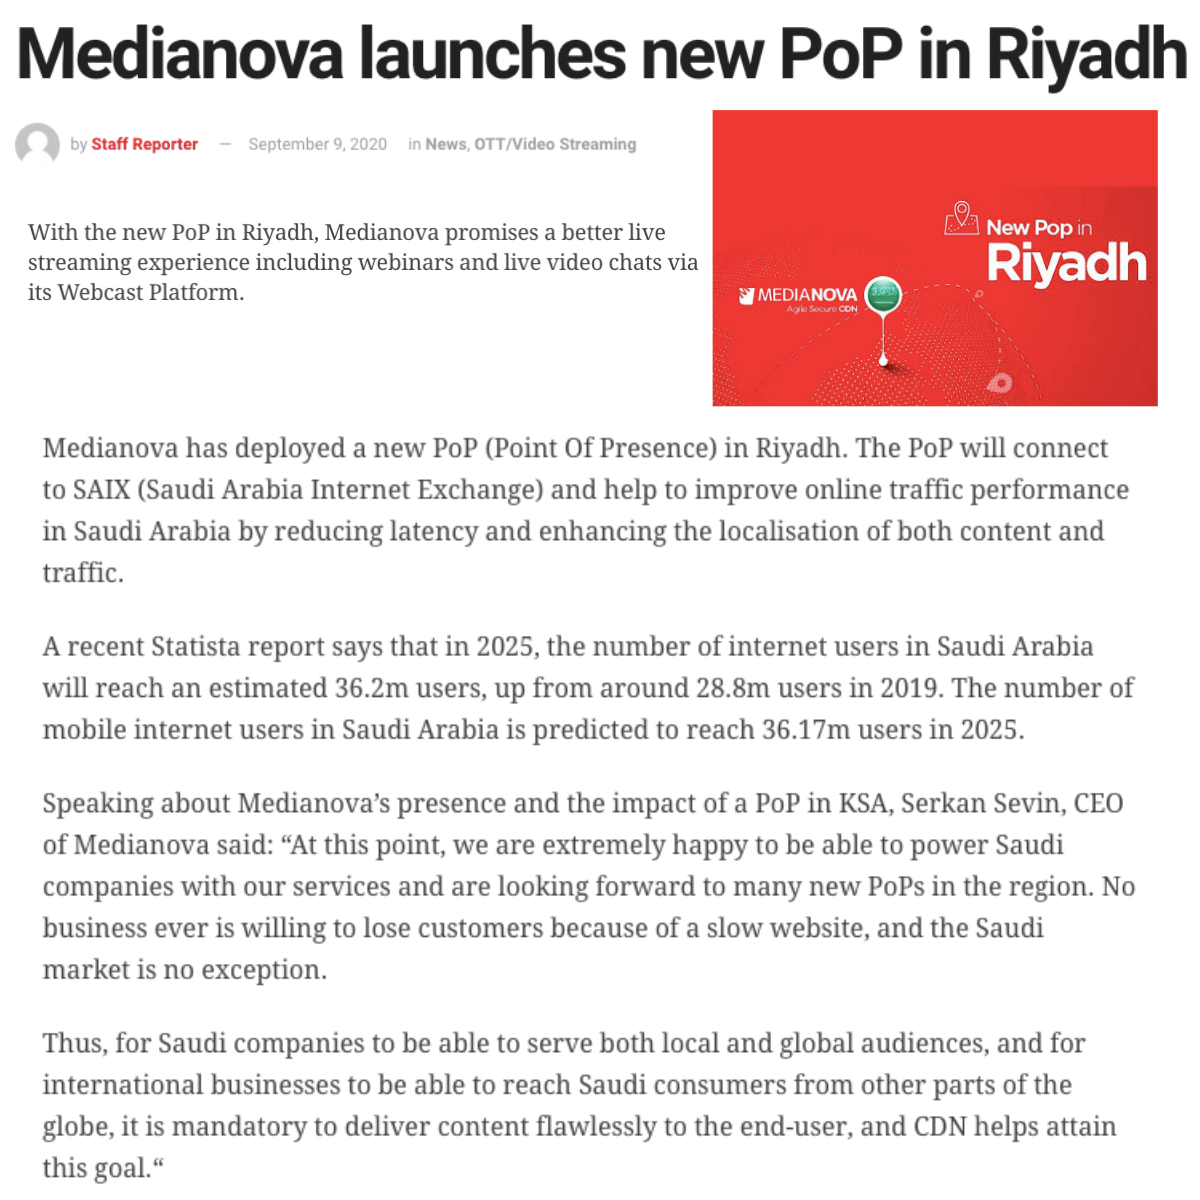 Medianova launches new PoP in Riyadh